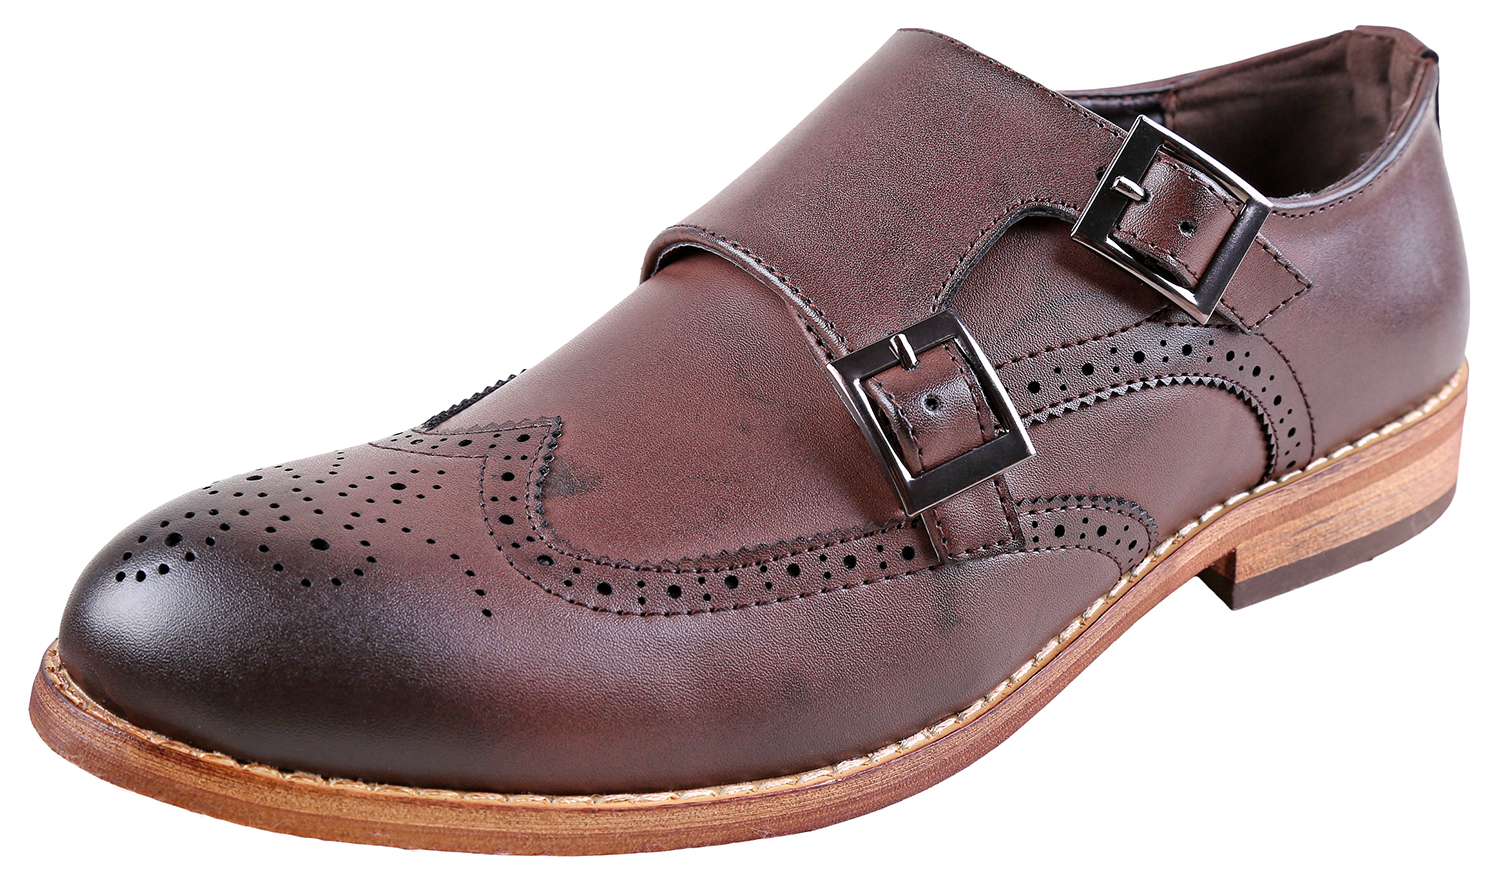 Urban Fox Allen Men's Dress Shoe | Double Monk Strap | Brogue | Wingtip Shoes for Men | Dark Brown 10 M US - image 1 of 7